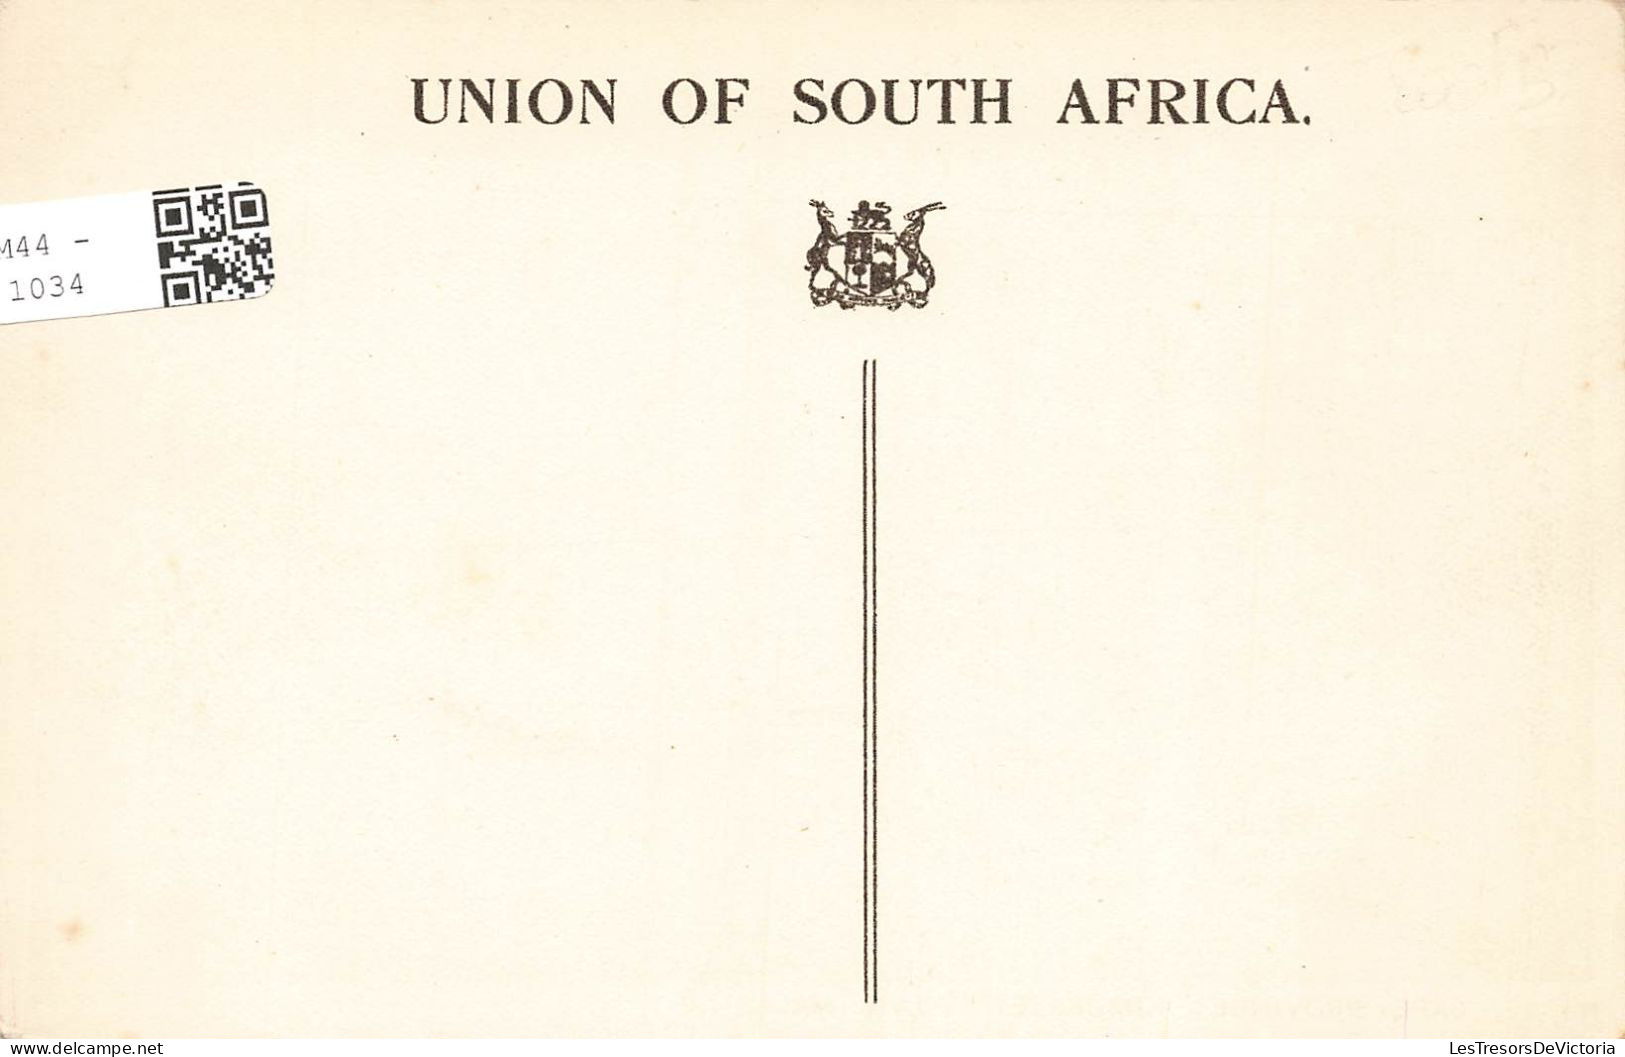 AFRIQUE DU SUD - Cape Province - Kimberley - Town Hall - Vue Générale D'une Rue - Carte Postale Ancienne - Südafrika